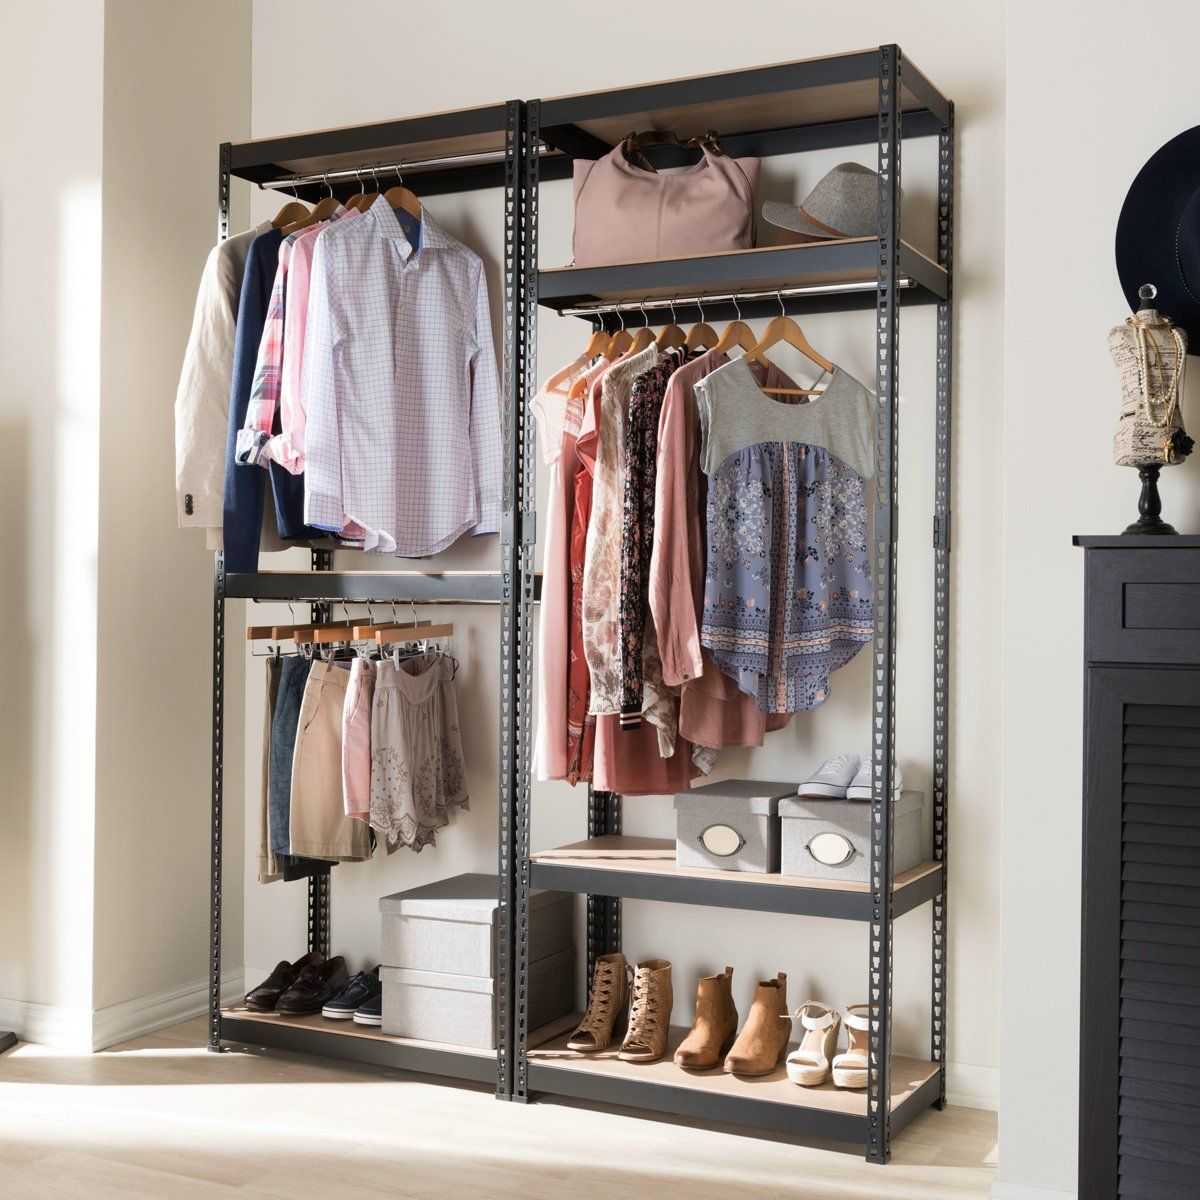 Стандартная высота полок в шкафу для одежды: оптимальный размер
стандартная высота полок в шкафу для одежды: оптимальный размер